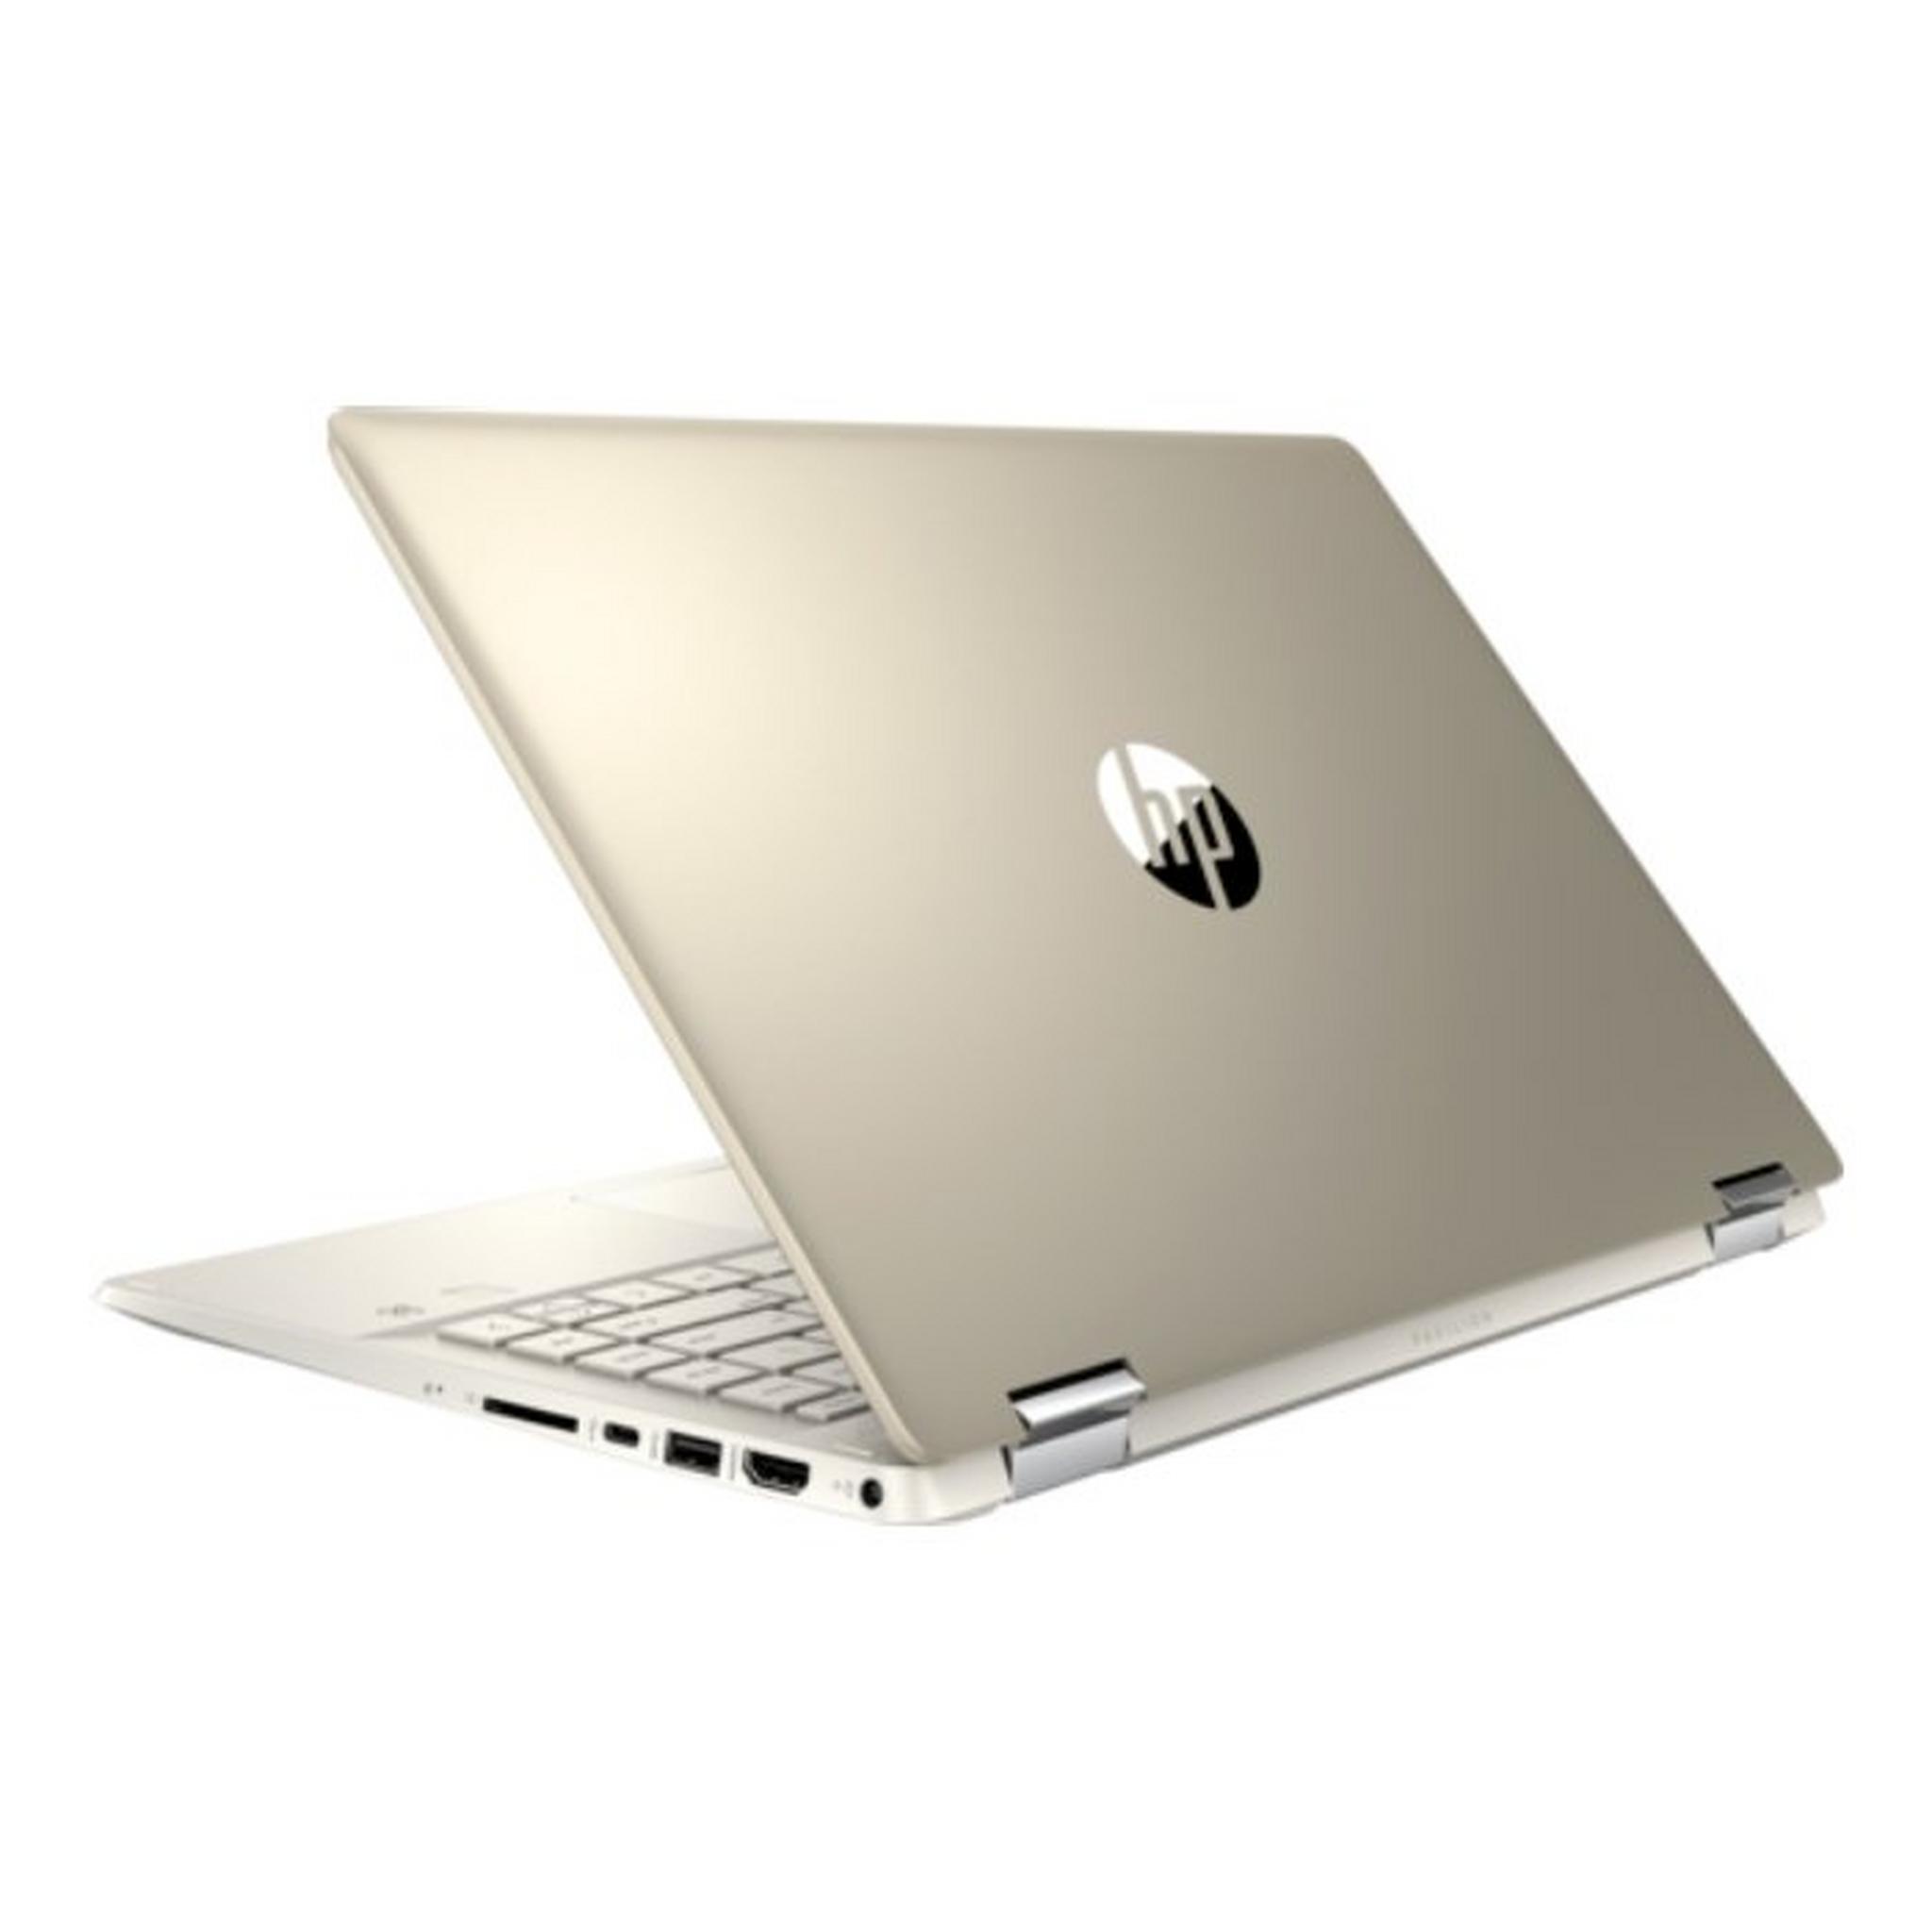 HP Pavilion x360 Intel Core i5 10th Gen. 8GB RAM 1TB HDD + 128GB SSD 14" Convertible Laptop (14-DH1013NX) - Gold